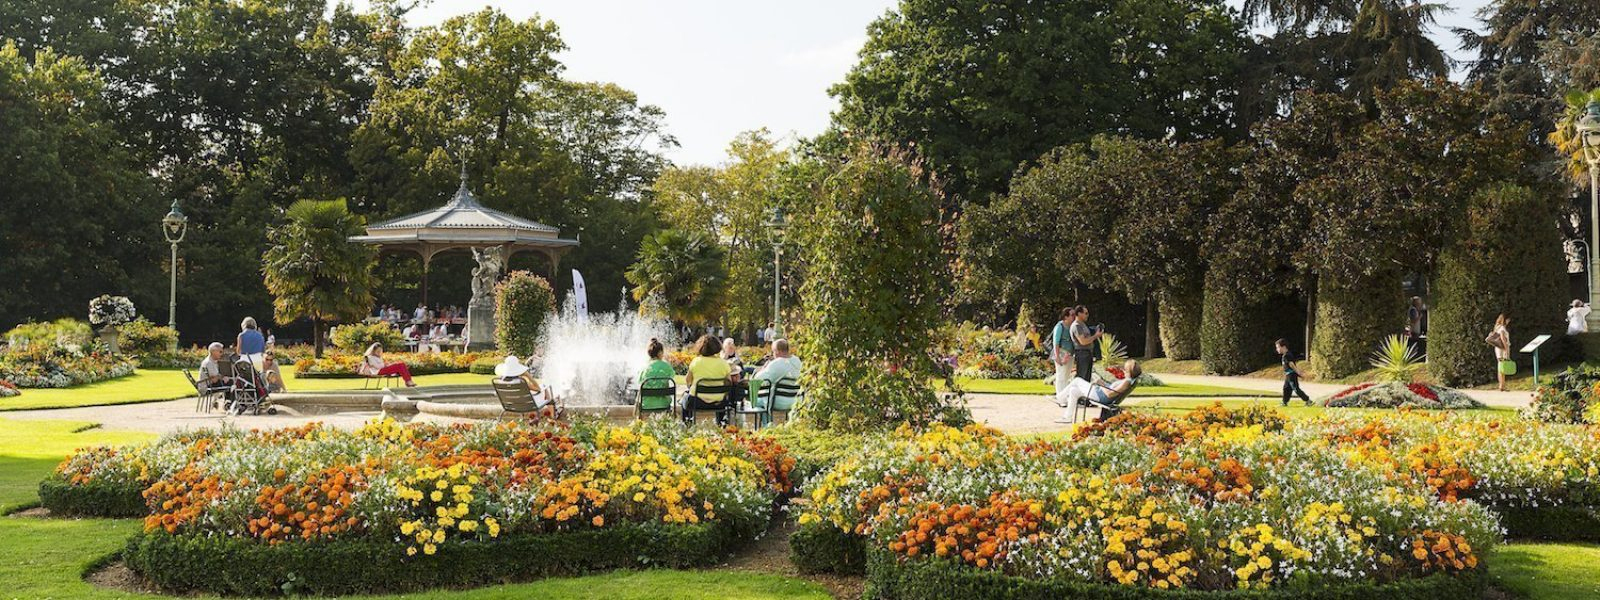 5 Parcs Et Jardins Où Flâner À Rennes | Tourisme Rennes concernant Jardins Fleuris Paysagiste